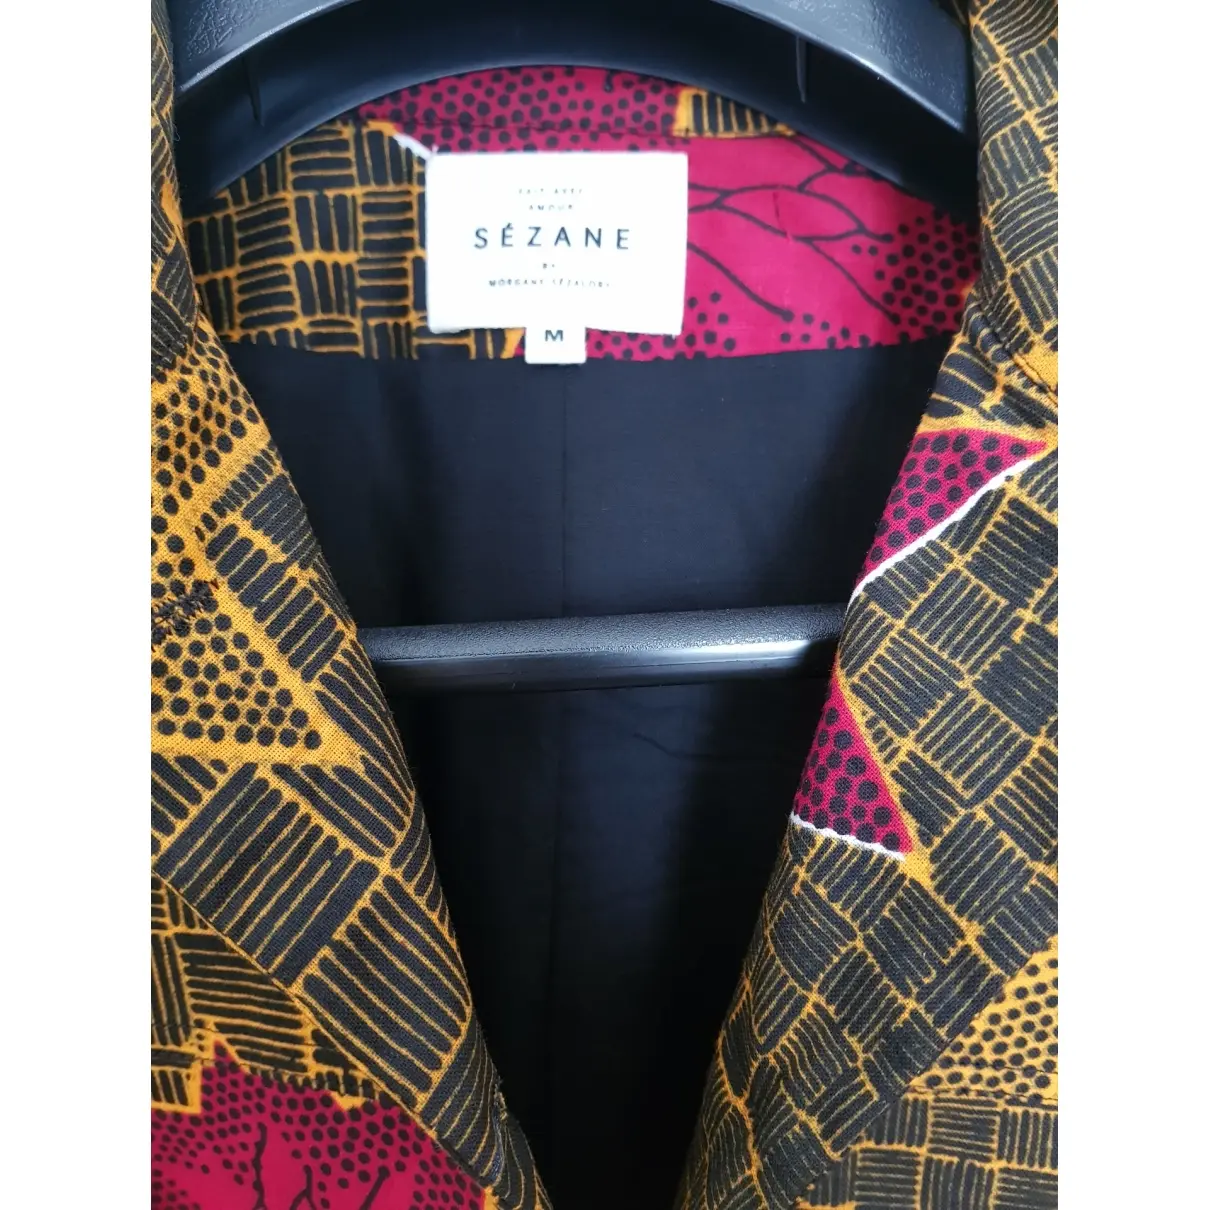 Buy Sézane Short vest online